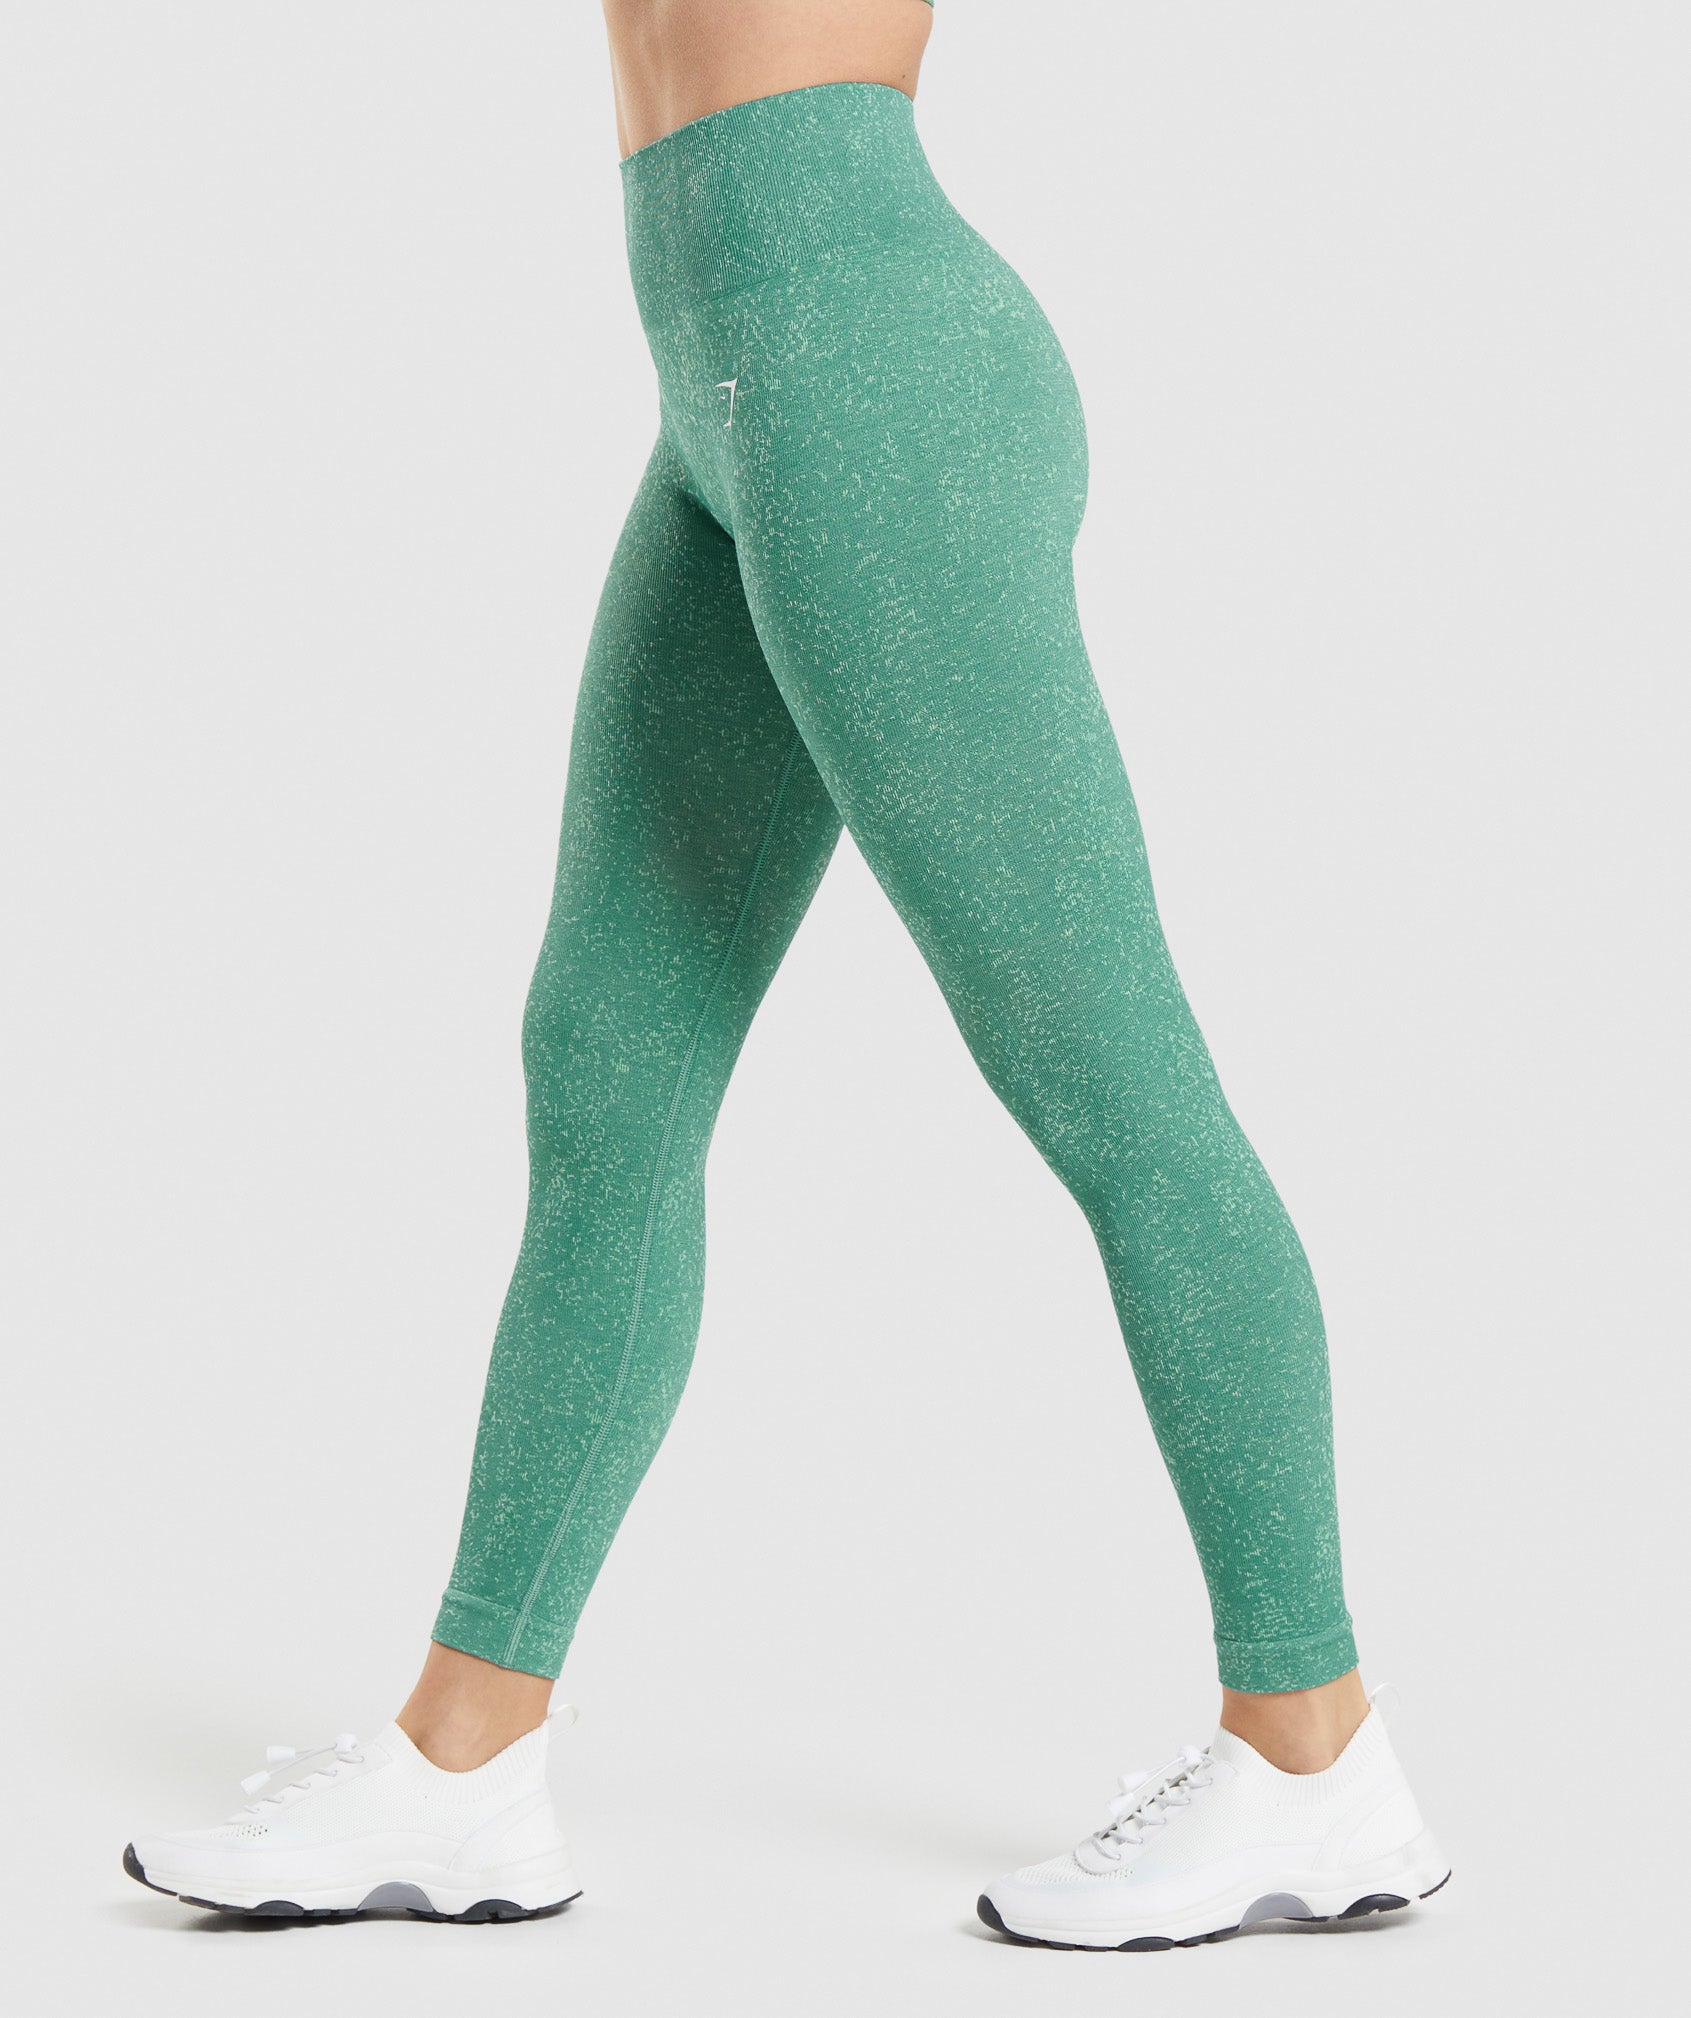 ADAPT FLECK SEAMLESS LEGGINGS Jewel Green Gymshark Womens Body Fit Size: XS,  S, M #gymshark #gymsharkwomen #trainingleggings #gymlegging